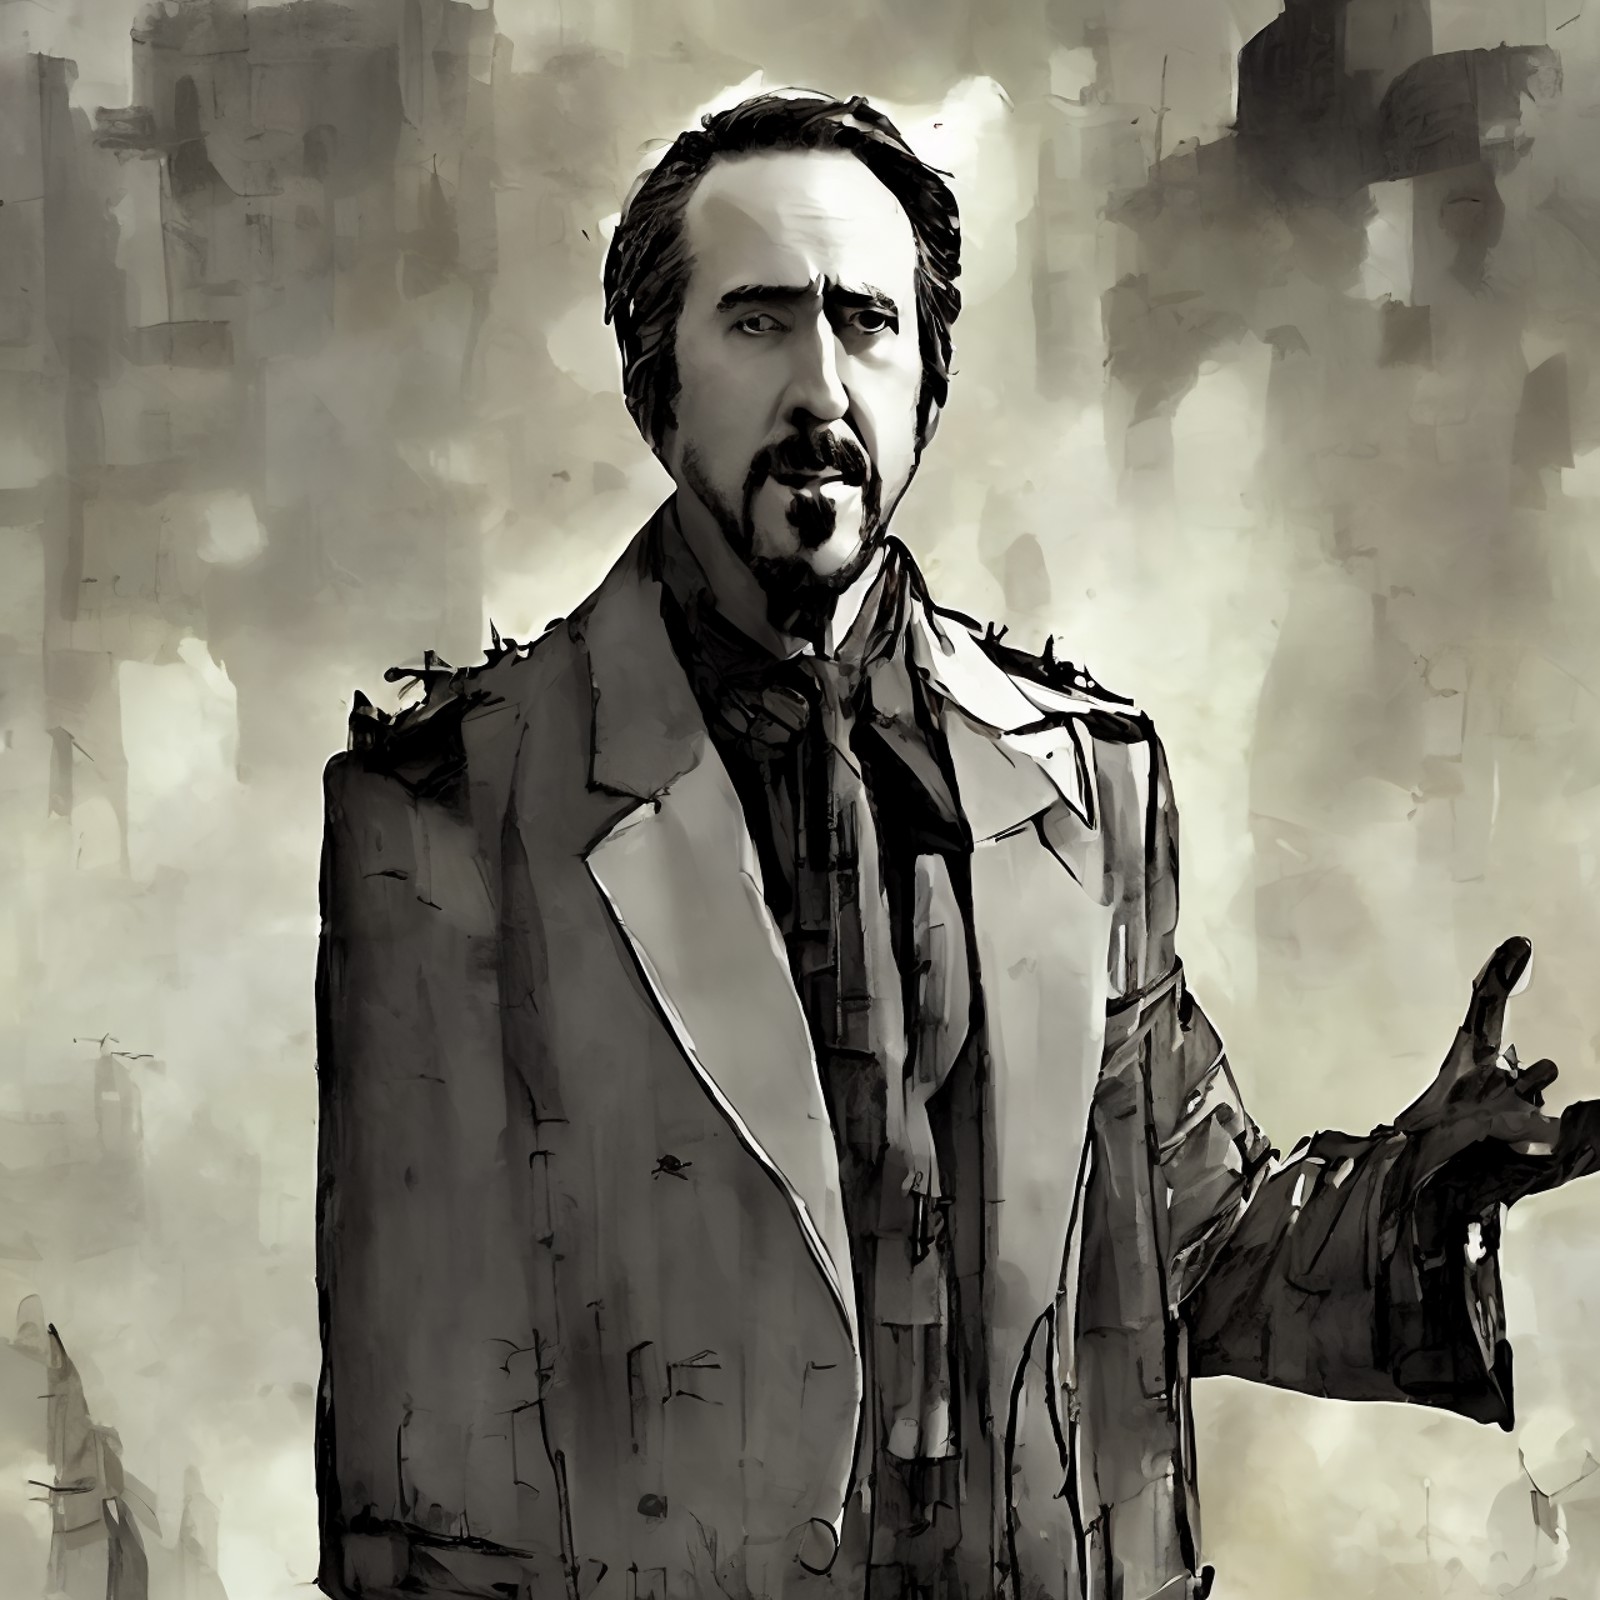 digital Ink, Nicholas Cage as president, style by DieselpunkCity